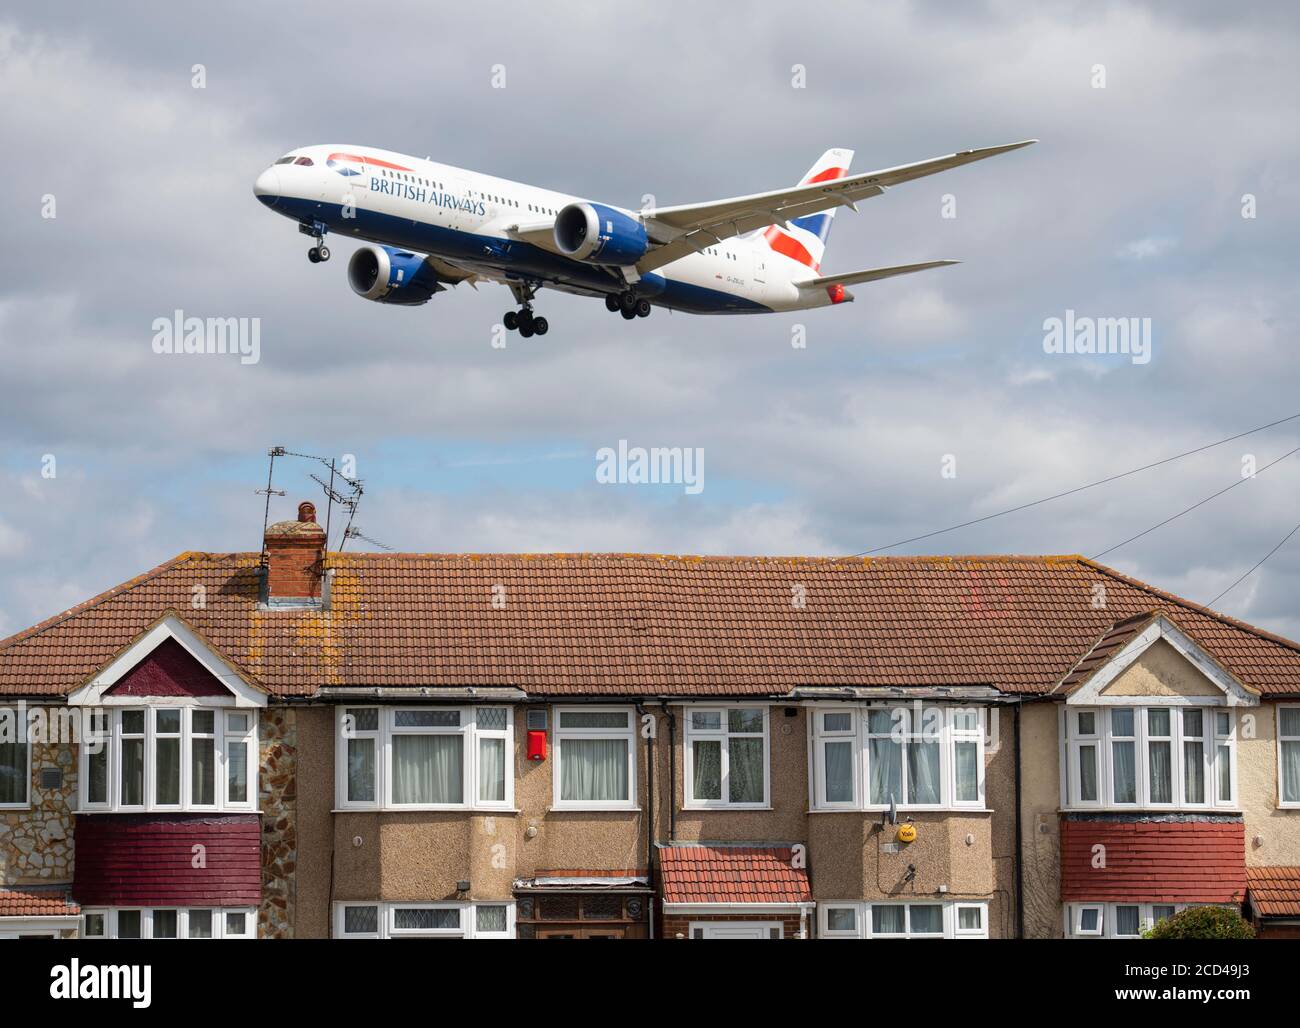 Aeroporto di Heathrow, Londra, Regno Unito. 26 agosto 2020. British Airways Boeing 787 Dreamliner da Amsterdam su Myrtle Avenue in avvicinamento alla pista 27L a Heathrow in raffica vento, i resti di Storm Francis. La pandemia di COVID-19 ha visto il crollo dell'industria aerea in tutto il mondo, con circa il 11% dei passeggeri a Heathrow nel luglio 2020 rispetto allo stesso mese del 2019, e circa il 25% dei movimenti del traffico aereo a Heathrow nel luglio 2020 rispetto al luglio 2019. Credit: Malcolm Park/Alamy Live News. Foto Stock